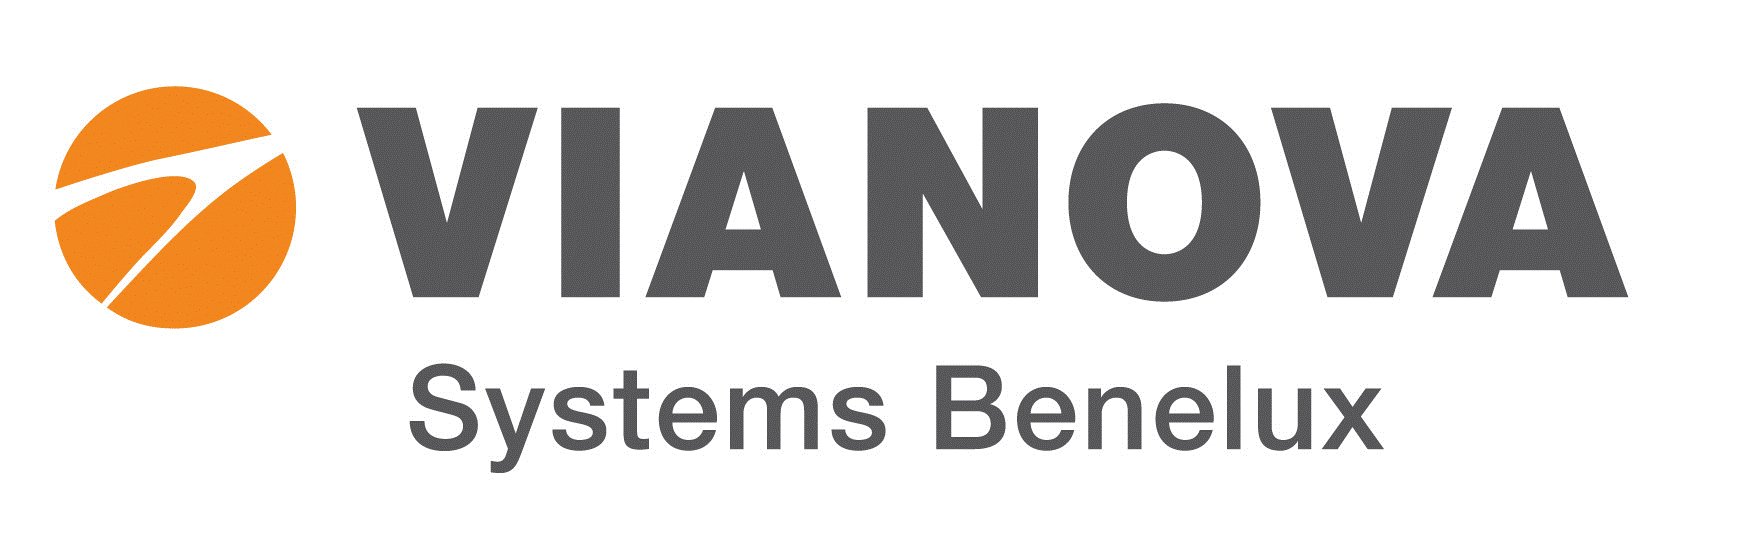 Vianova Systems Benelux